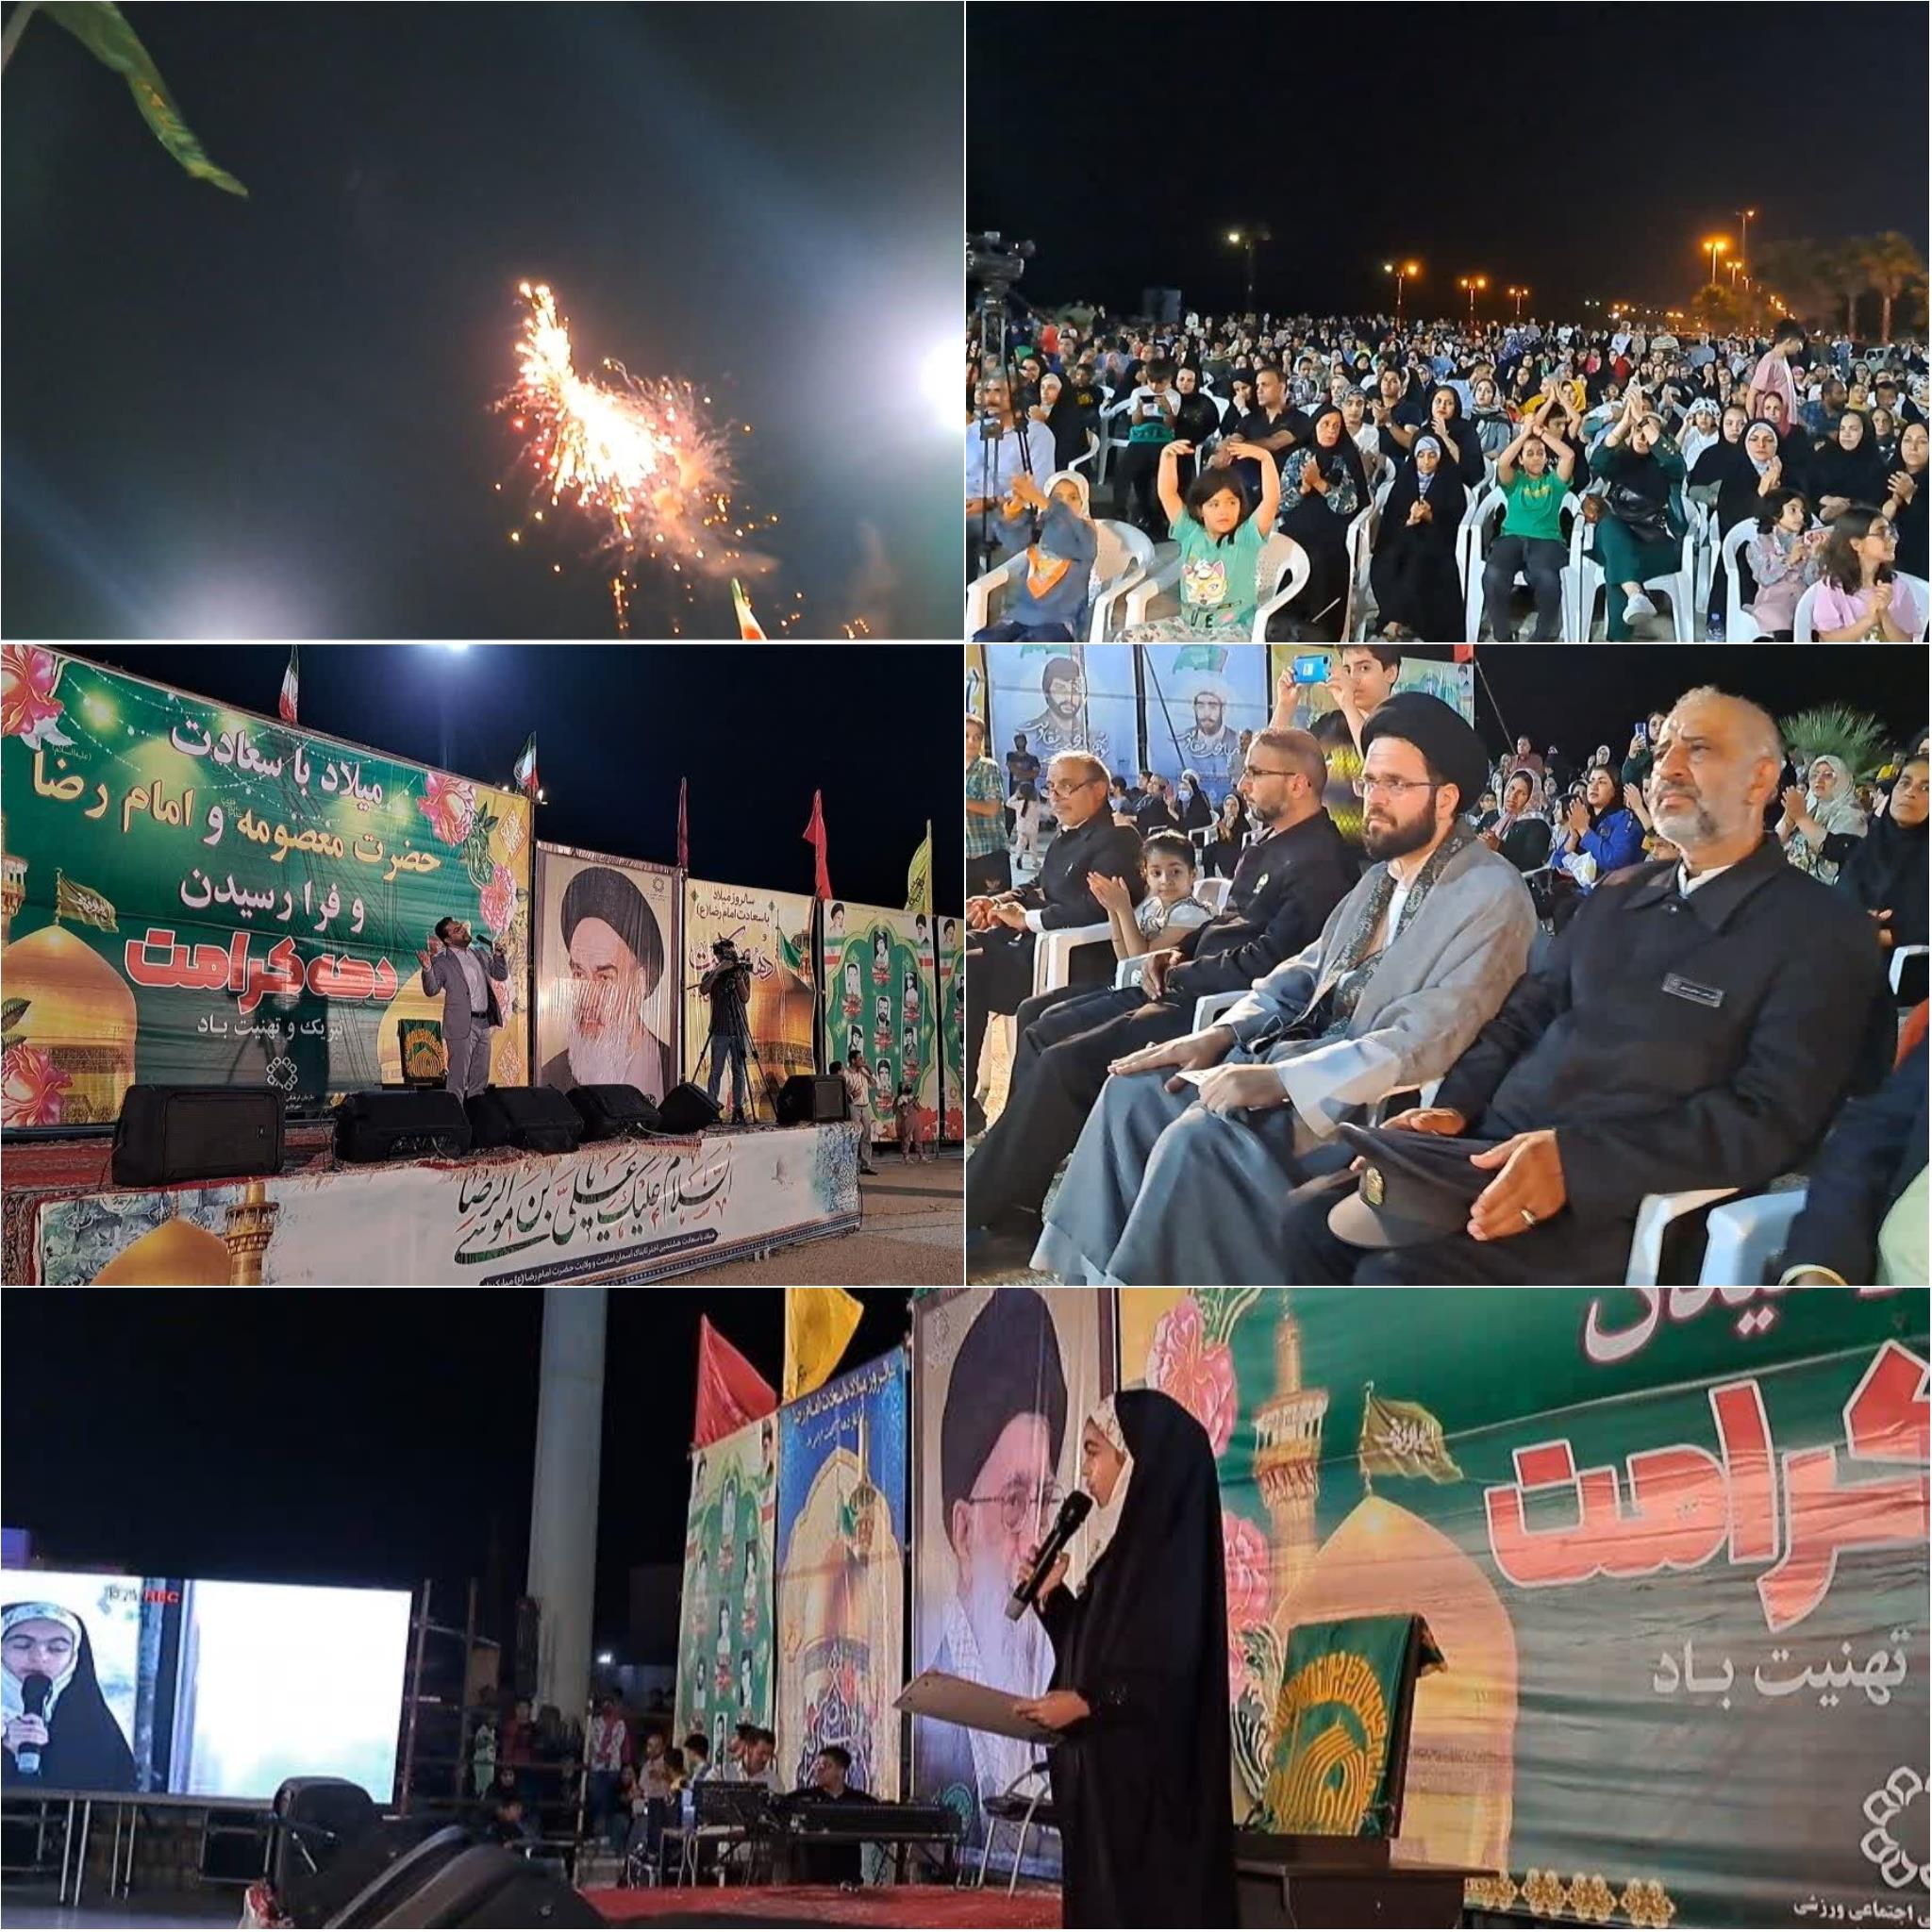 برگزاری جشن بزرگ زیرسایه خورشید در ساحل بوشهر / نورافشانی آسمان بوشهر در شب میلاد ضامن آهو